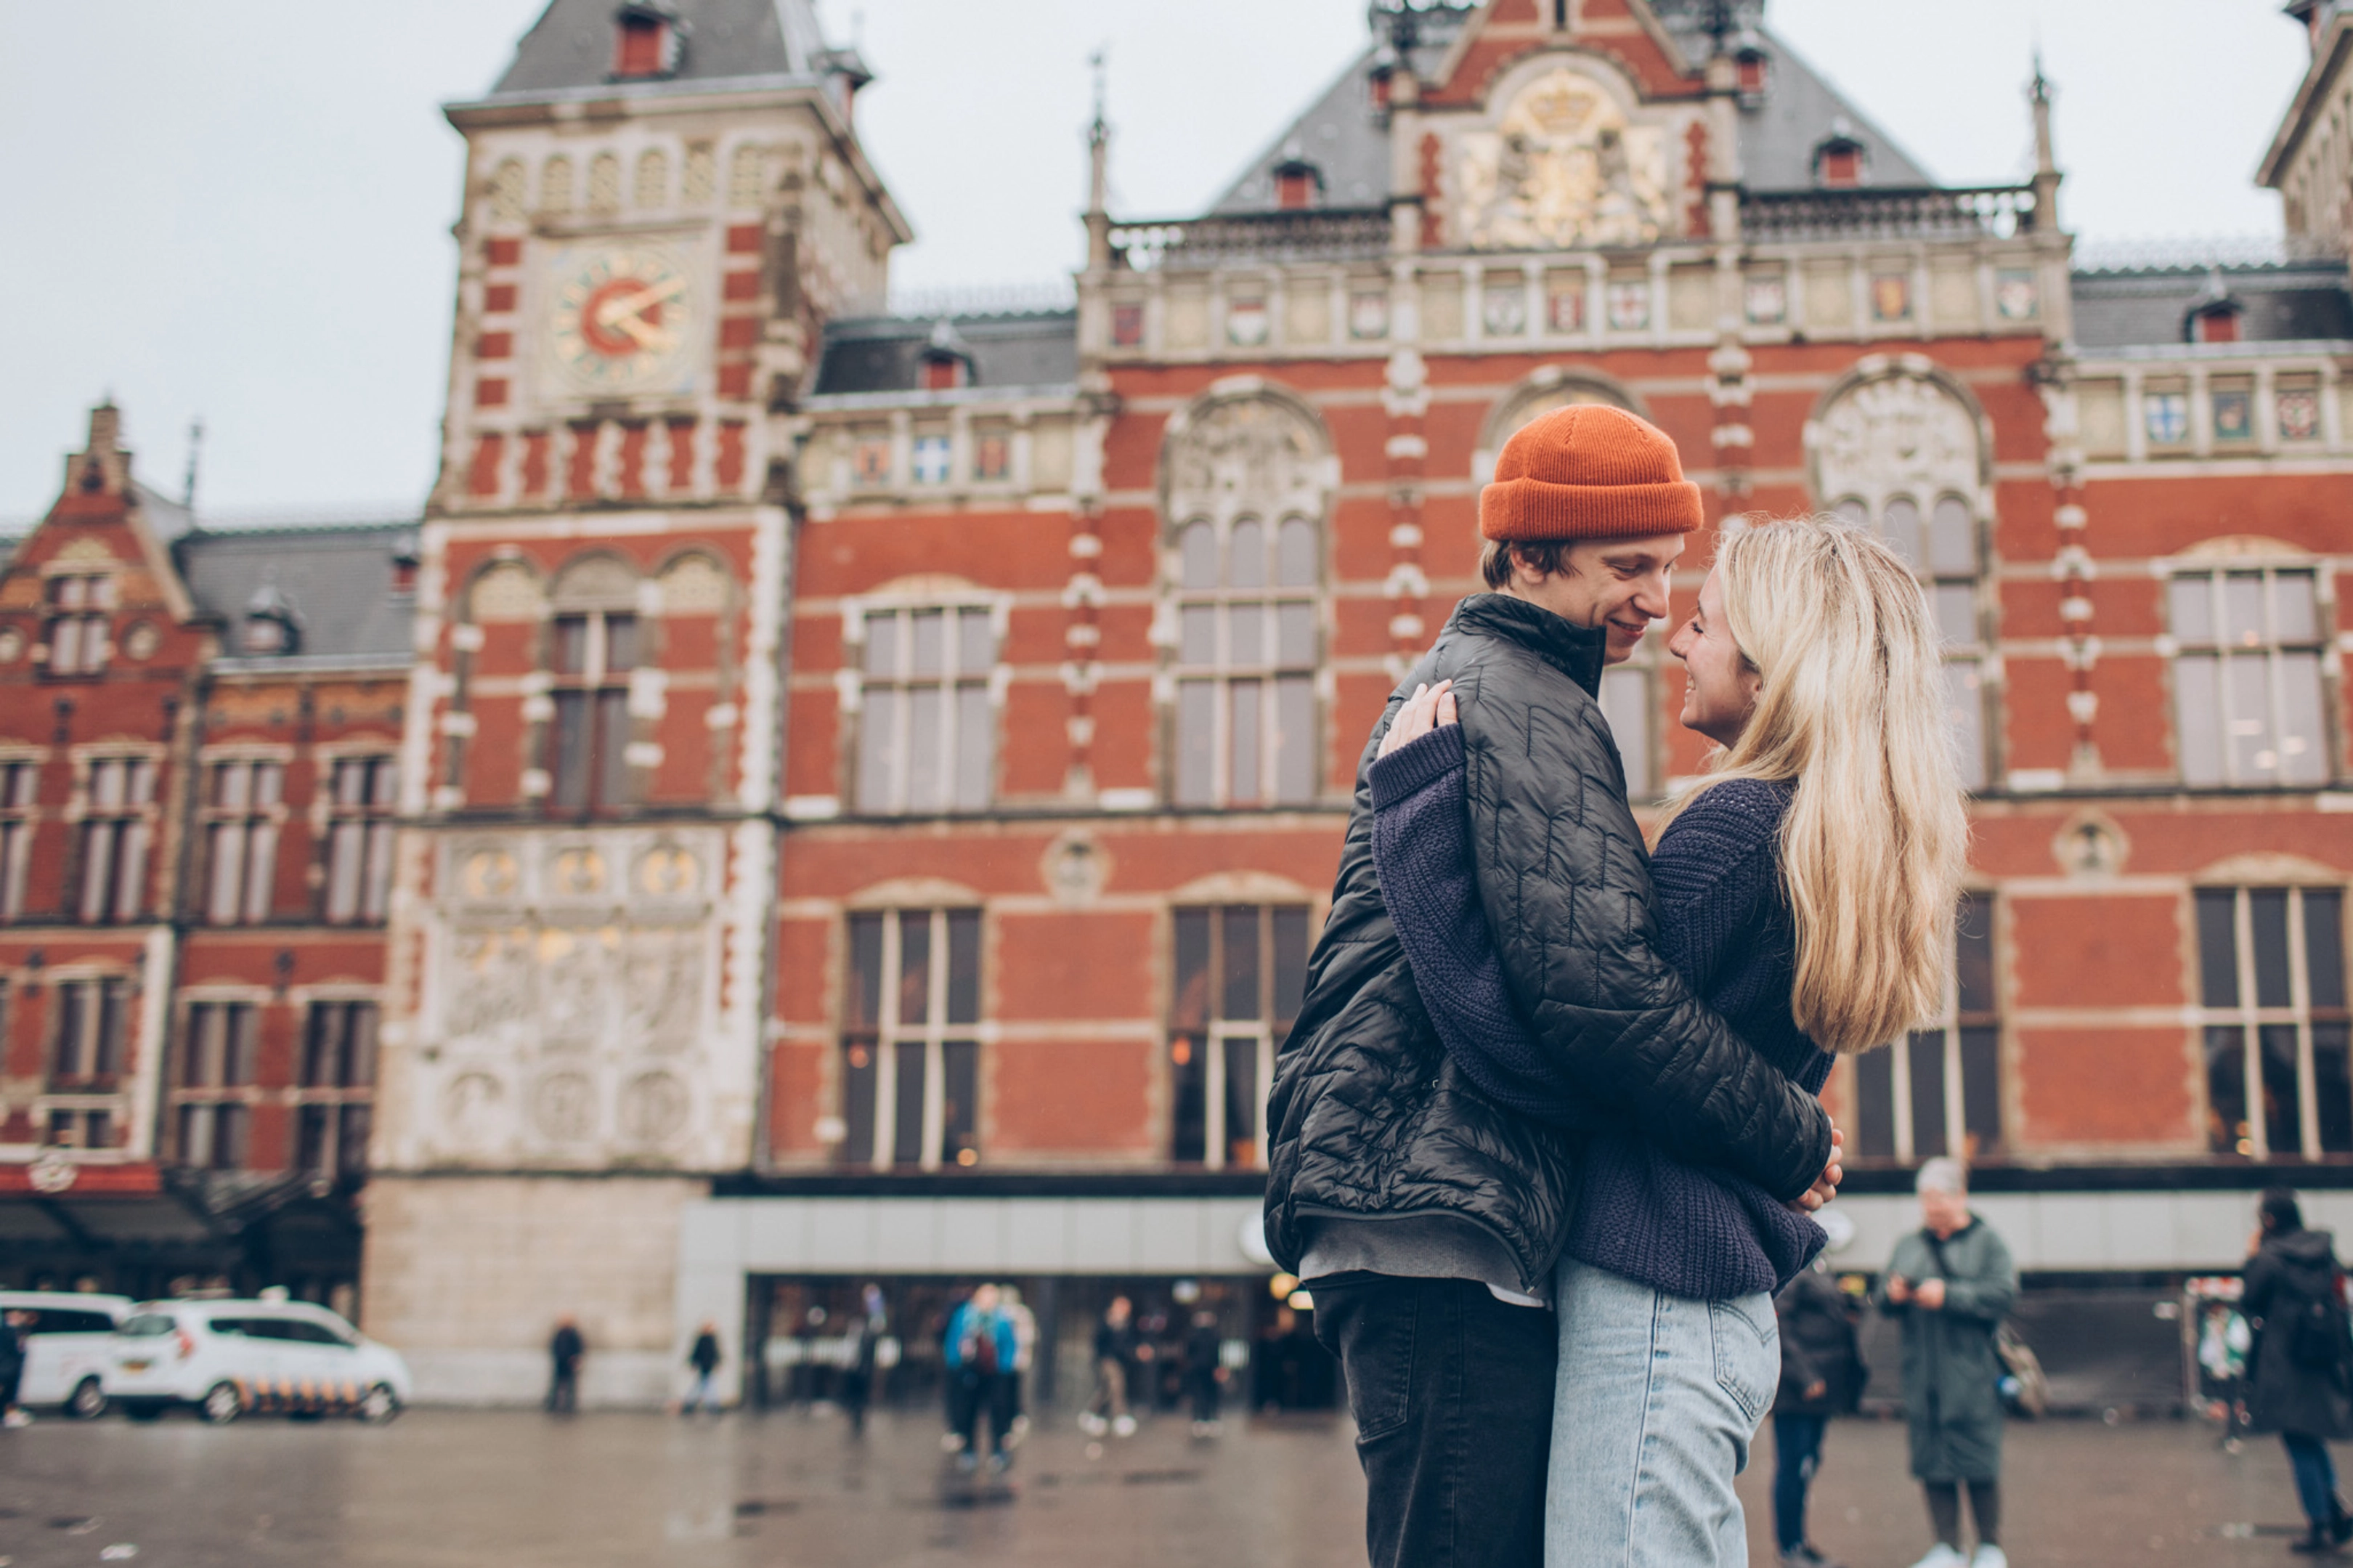 Capture sus recuerdos en Ámsterdam